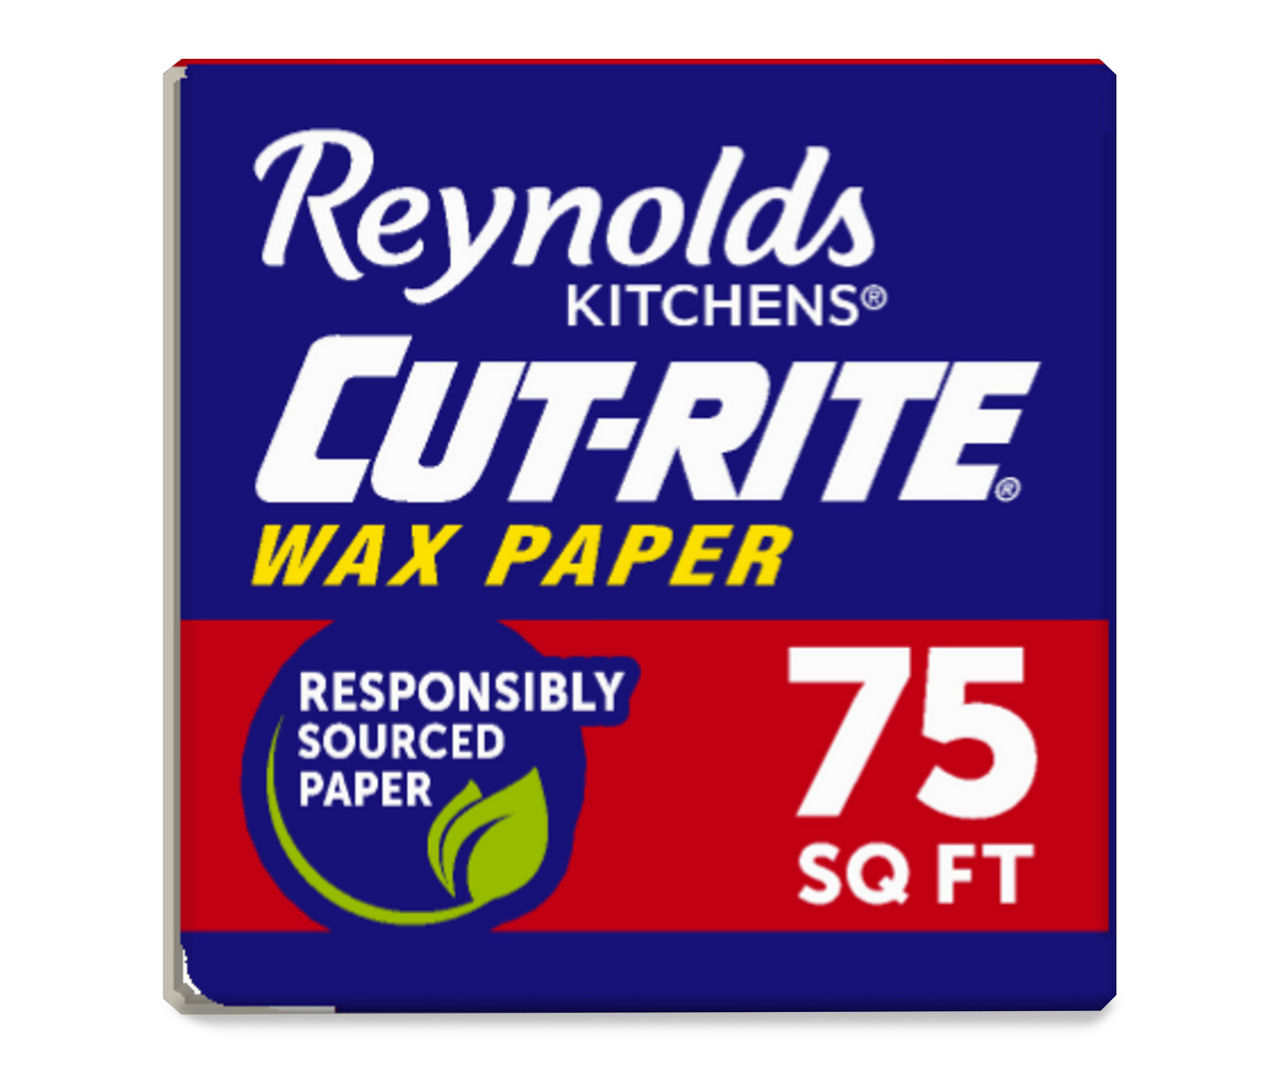 Reynolds Kitchens® Cut-Rite® Wax Paper, 75 sq ft - Harris Teeter